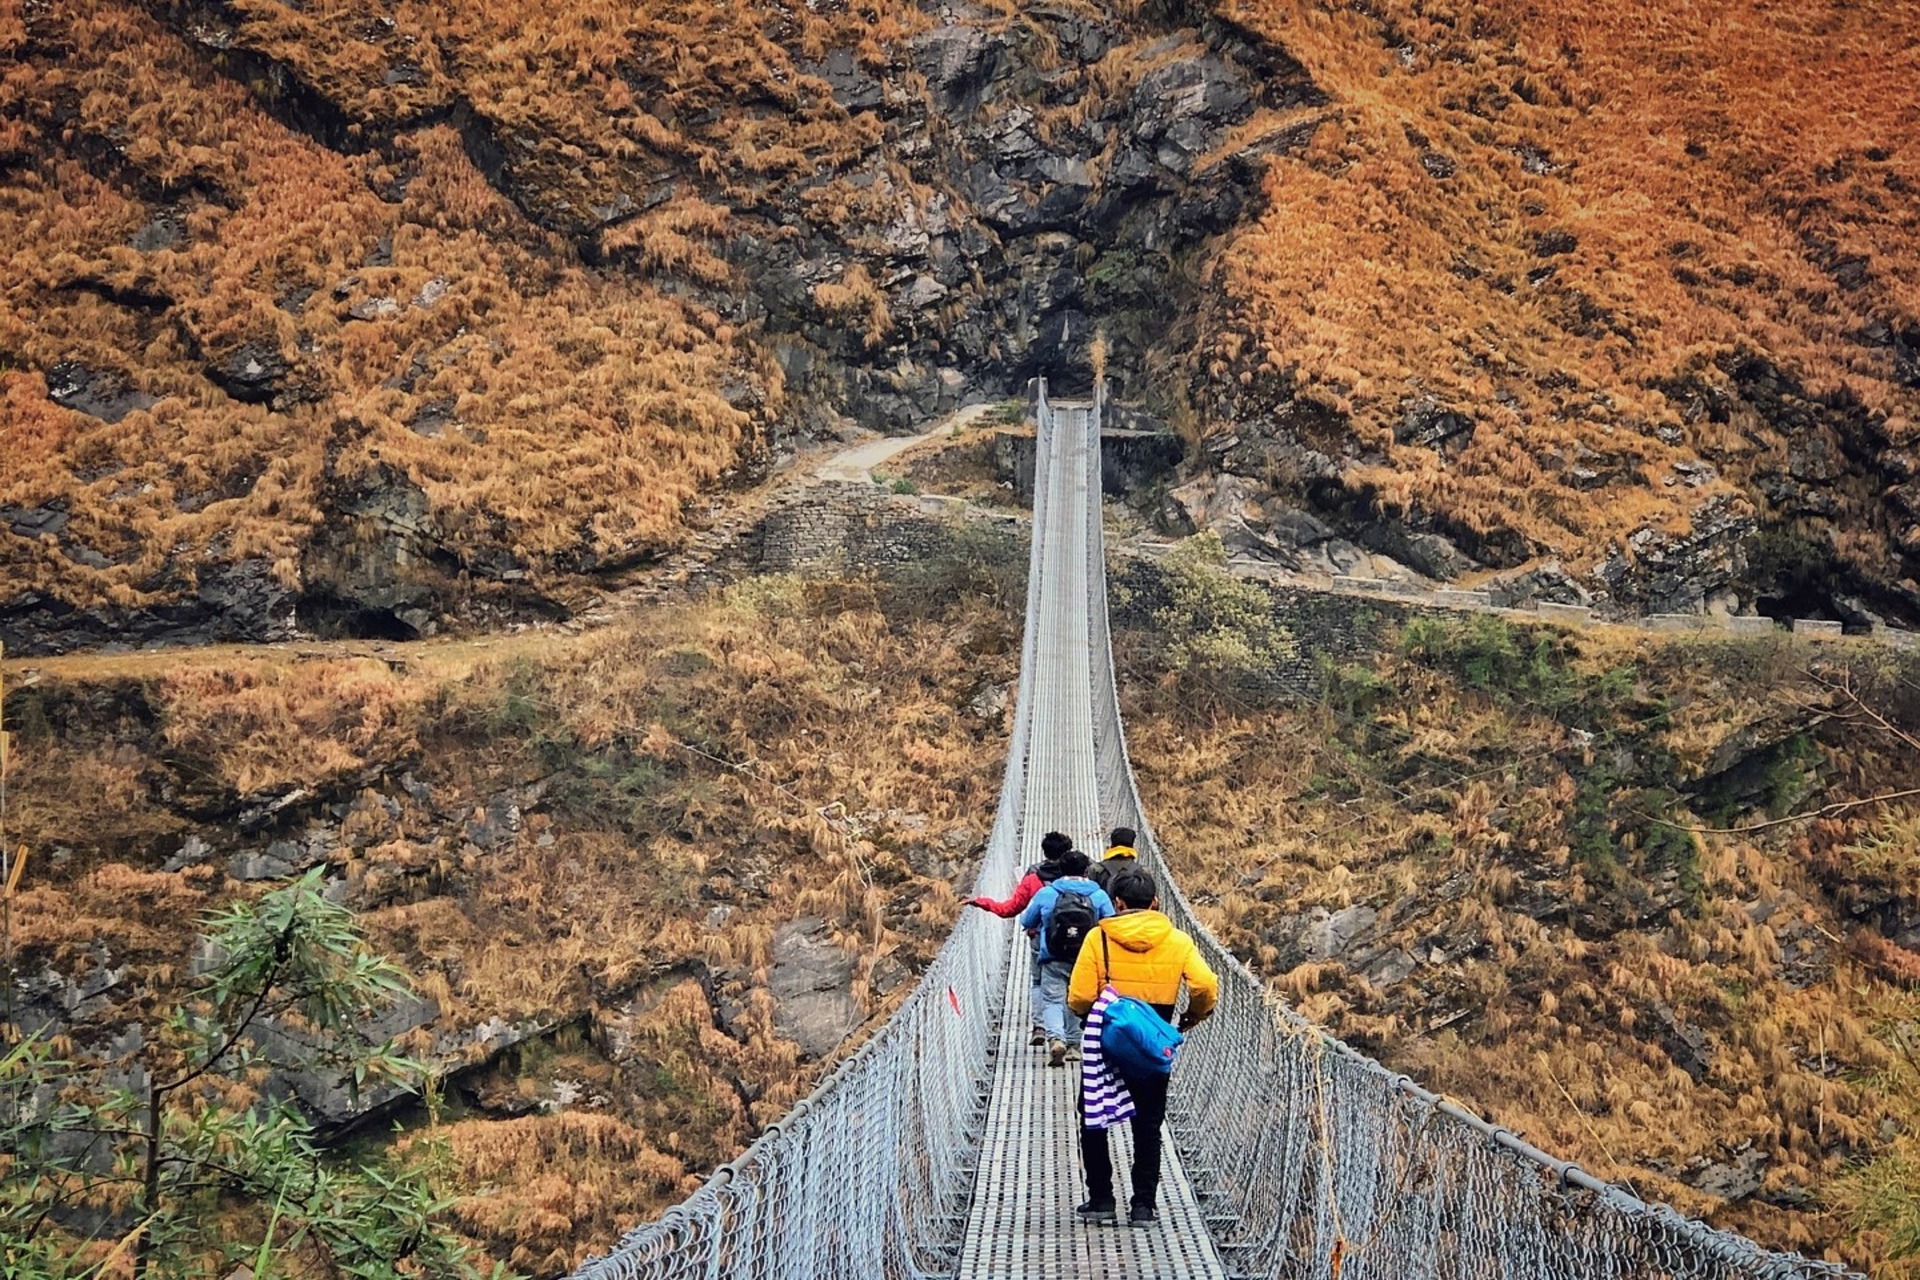 גשרים תלויים: ב-63 שנים תוכננו ונבנו בנפאל 10 אלף מעברים תלויים הודות לשיתוף הפעולה של שוויץ